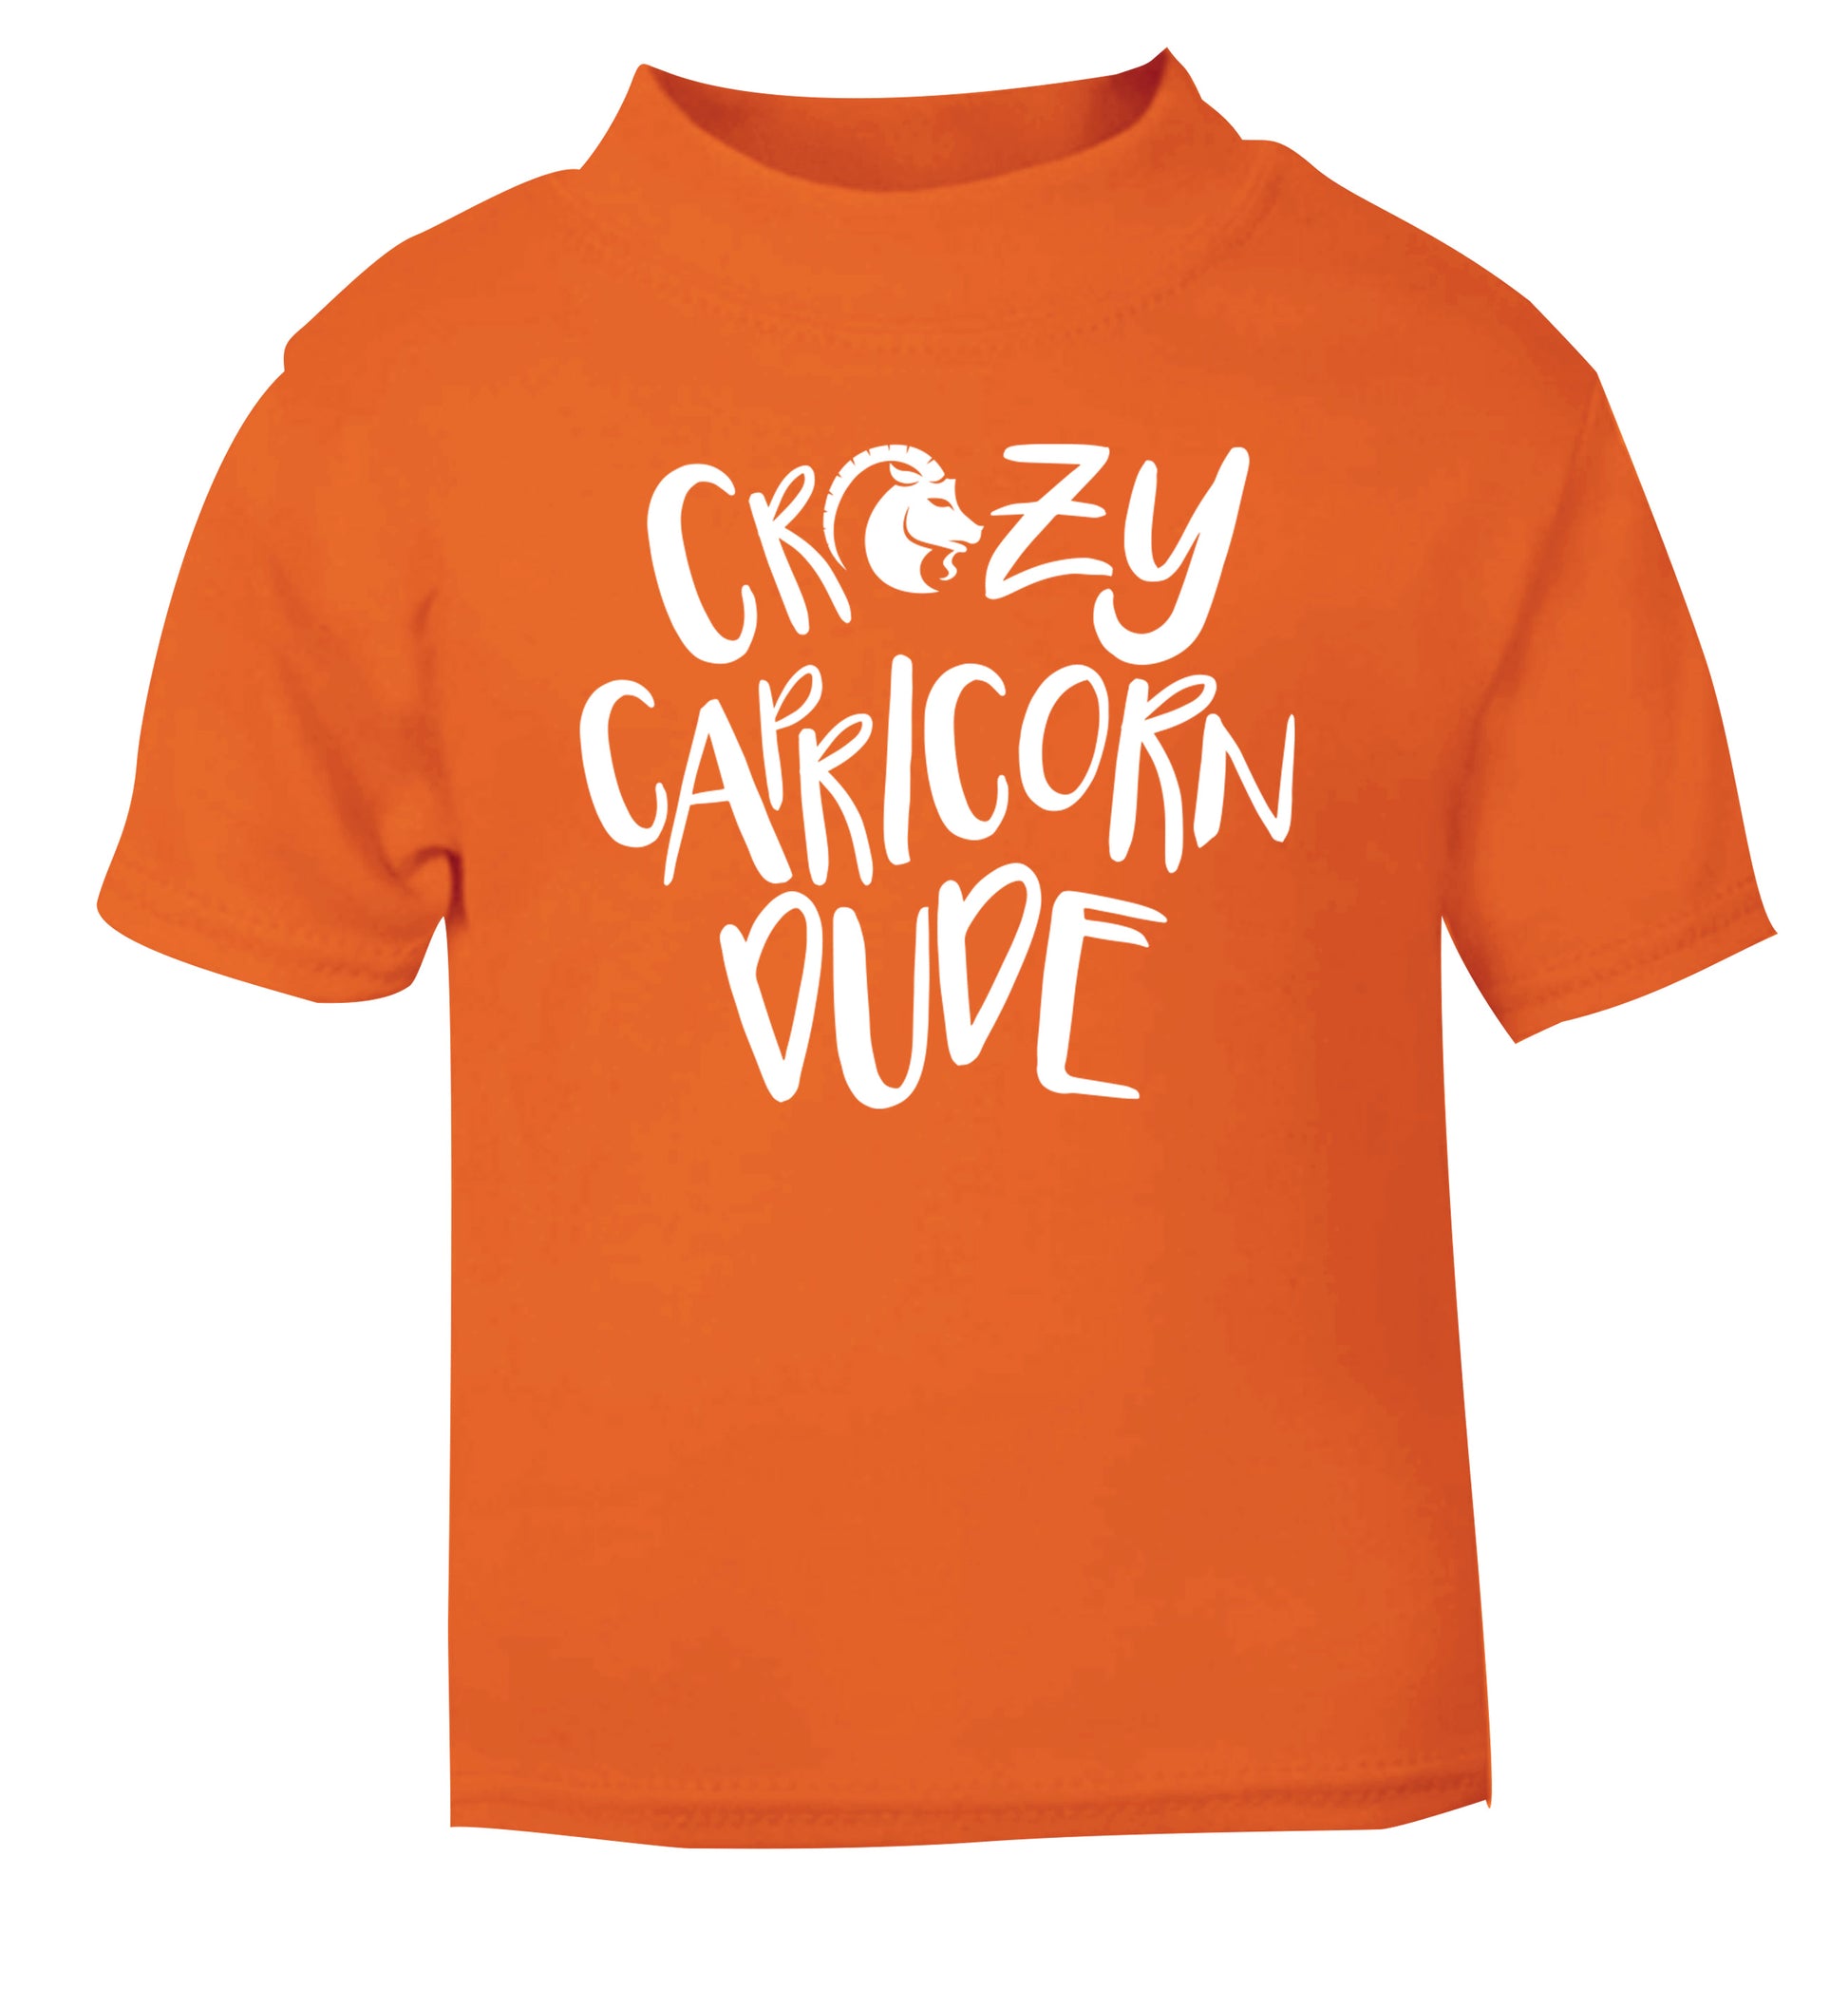 Crazy capricorn dude orange Baby Toddler Tshirt 2 Years